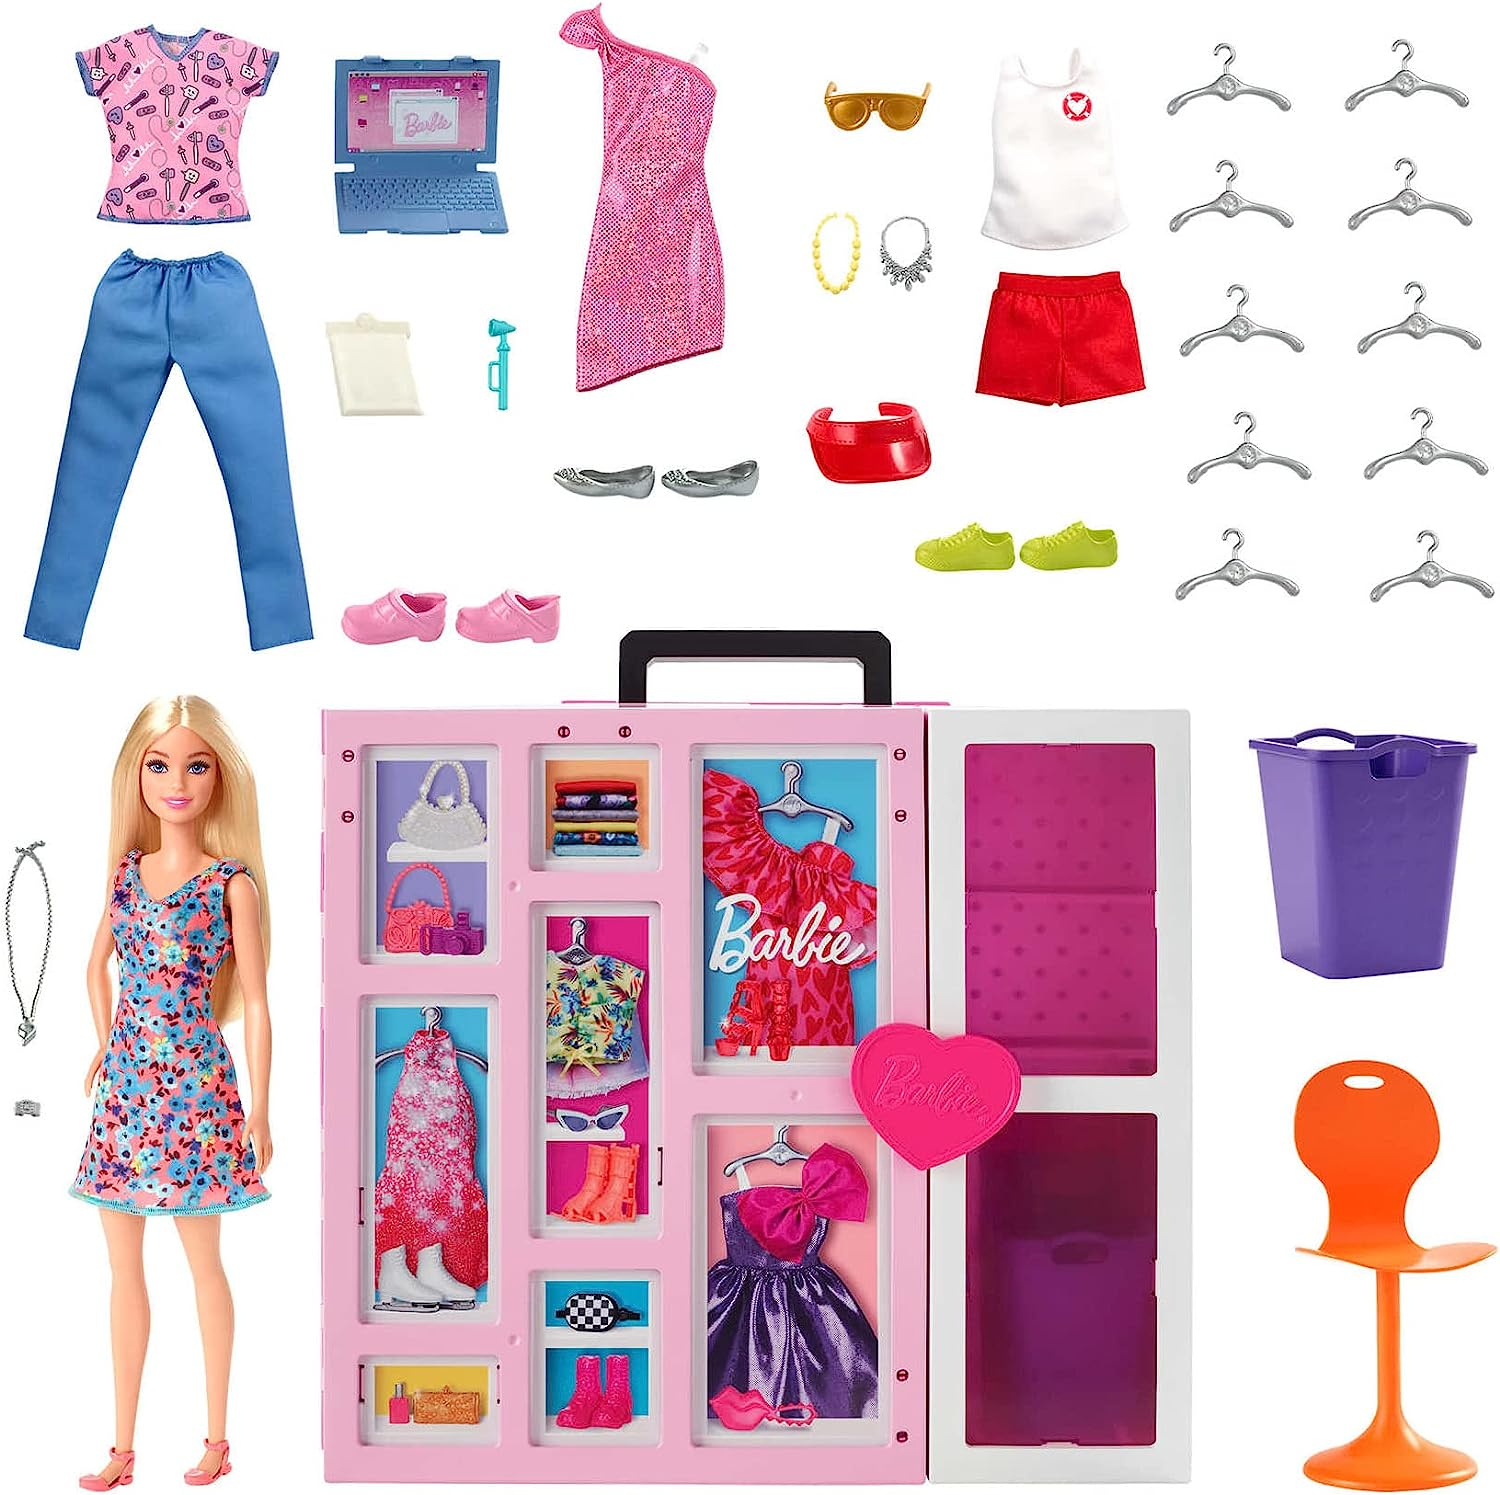 5 Roupas e 5 acessórios para a Barbie no Shoptime